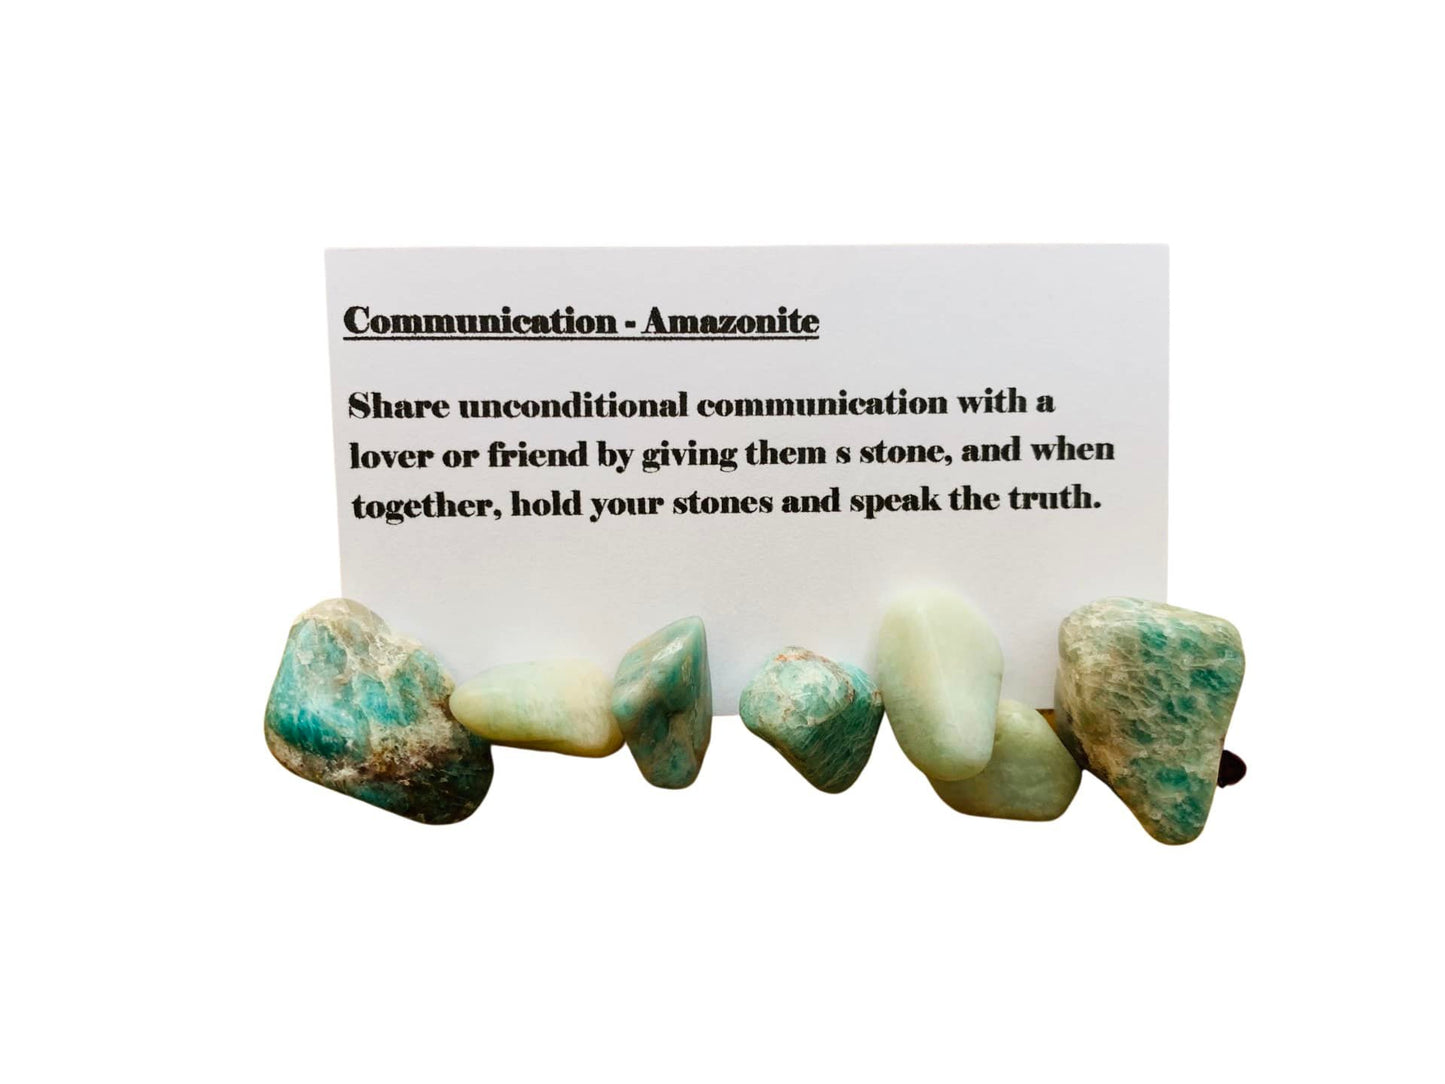 Communication: Amazonite